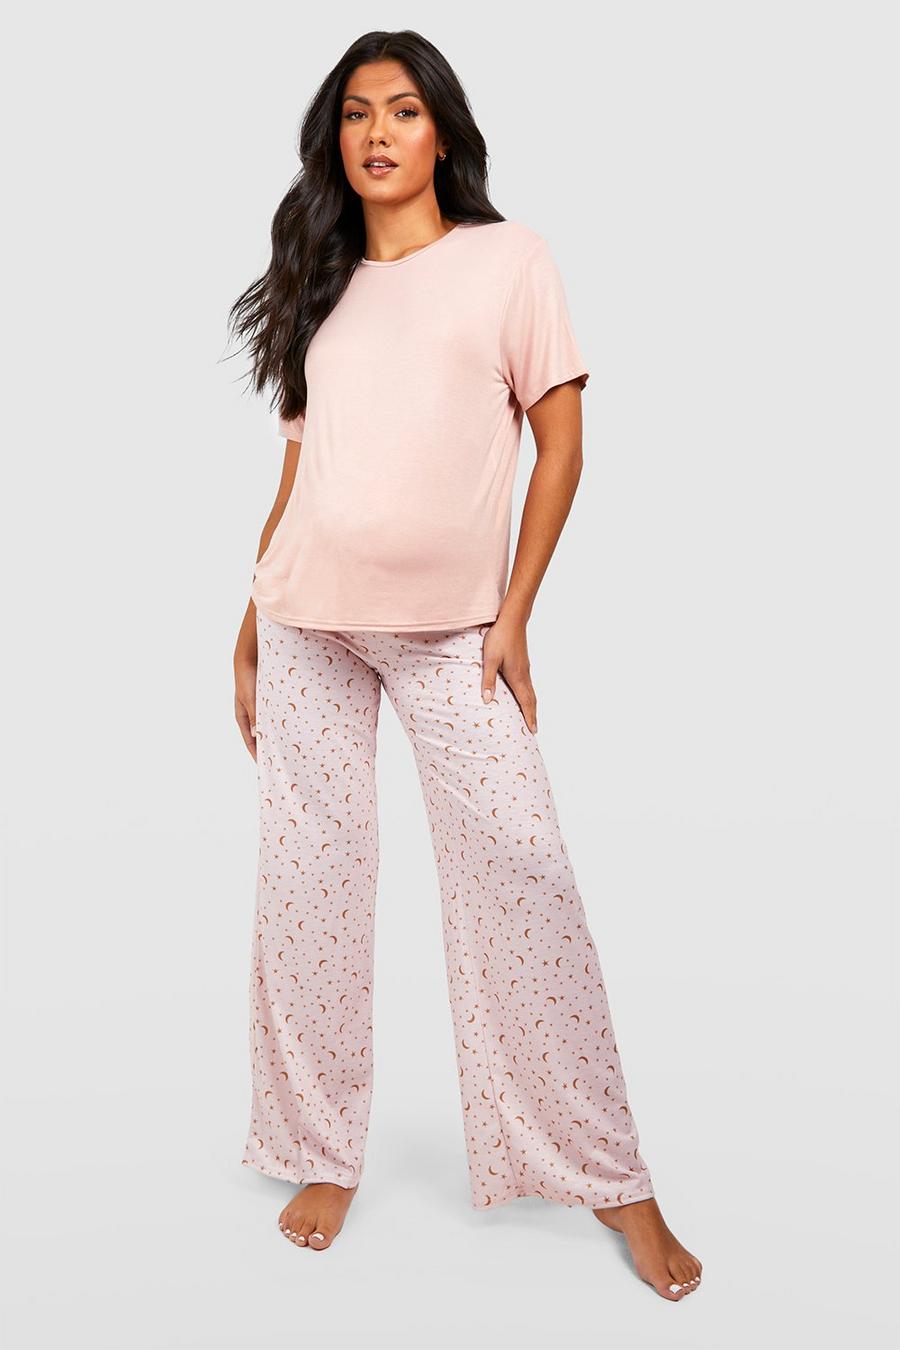 Blush rose Zwangerschap Sterrenprint Pyjama Set